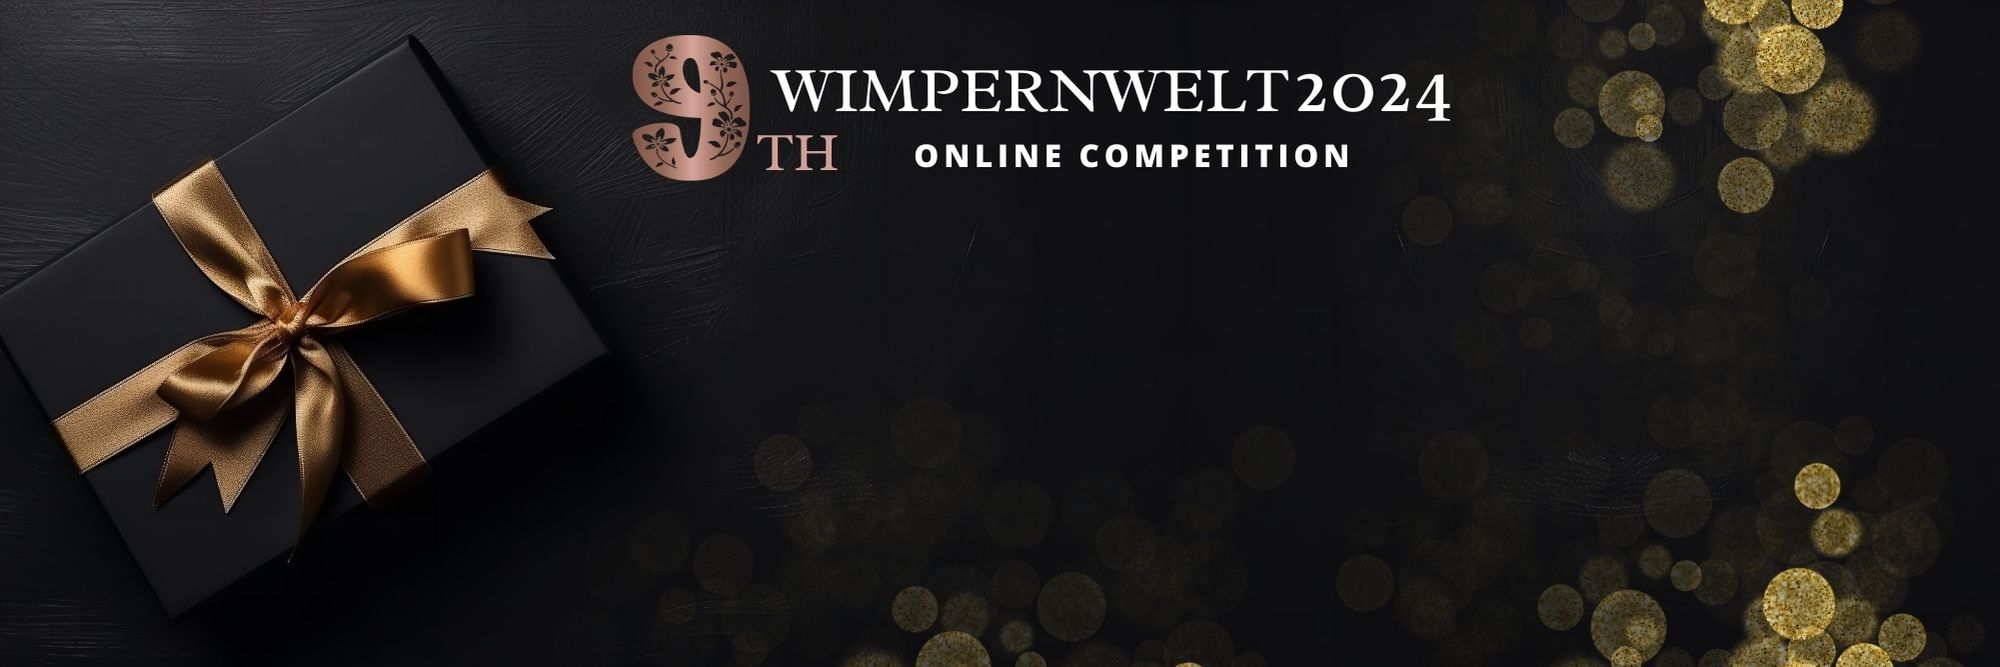 Wimpernwelt Banner Sponsor